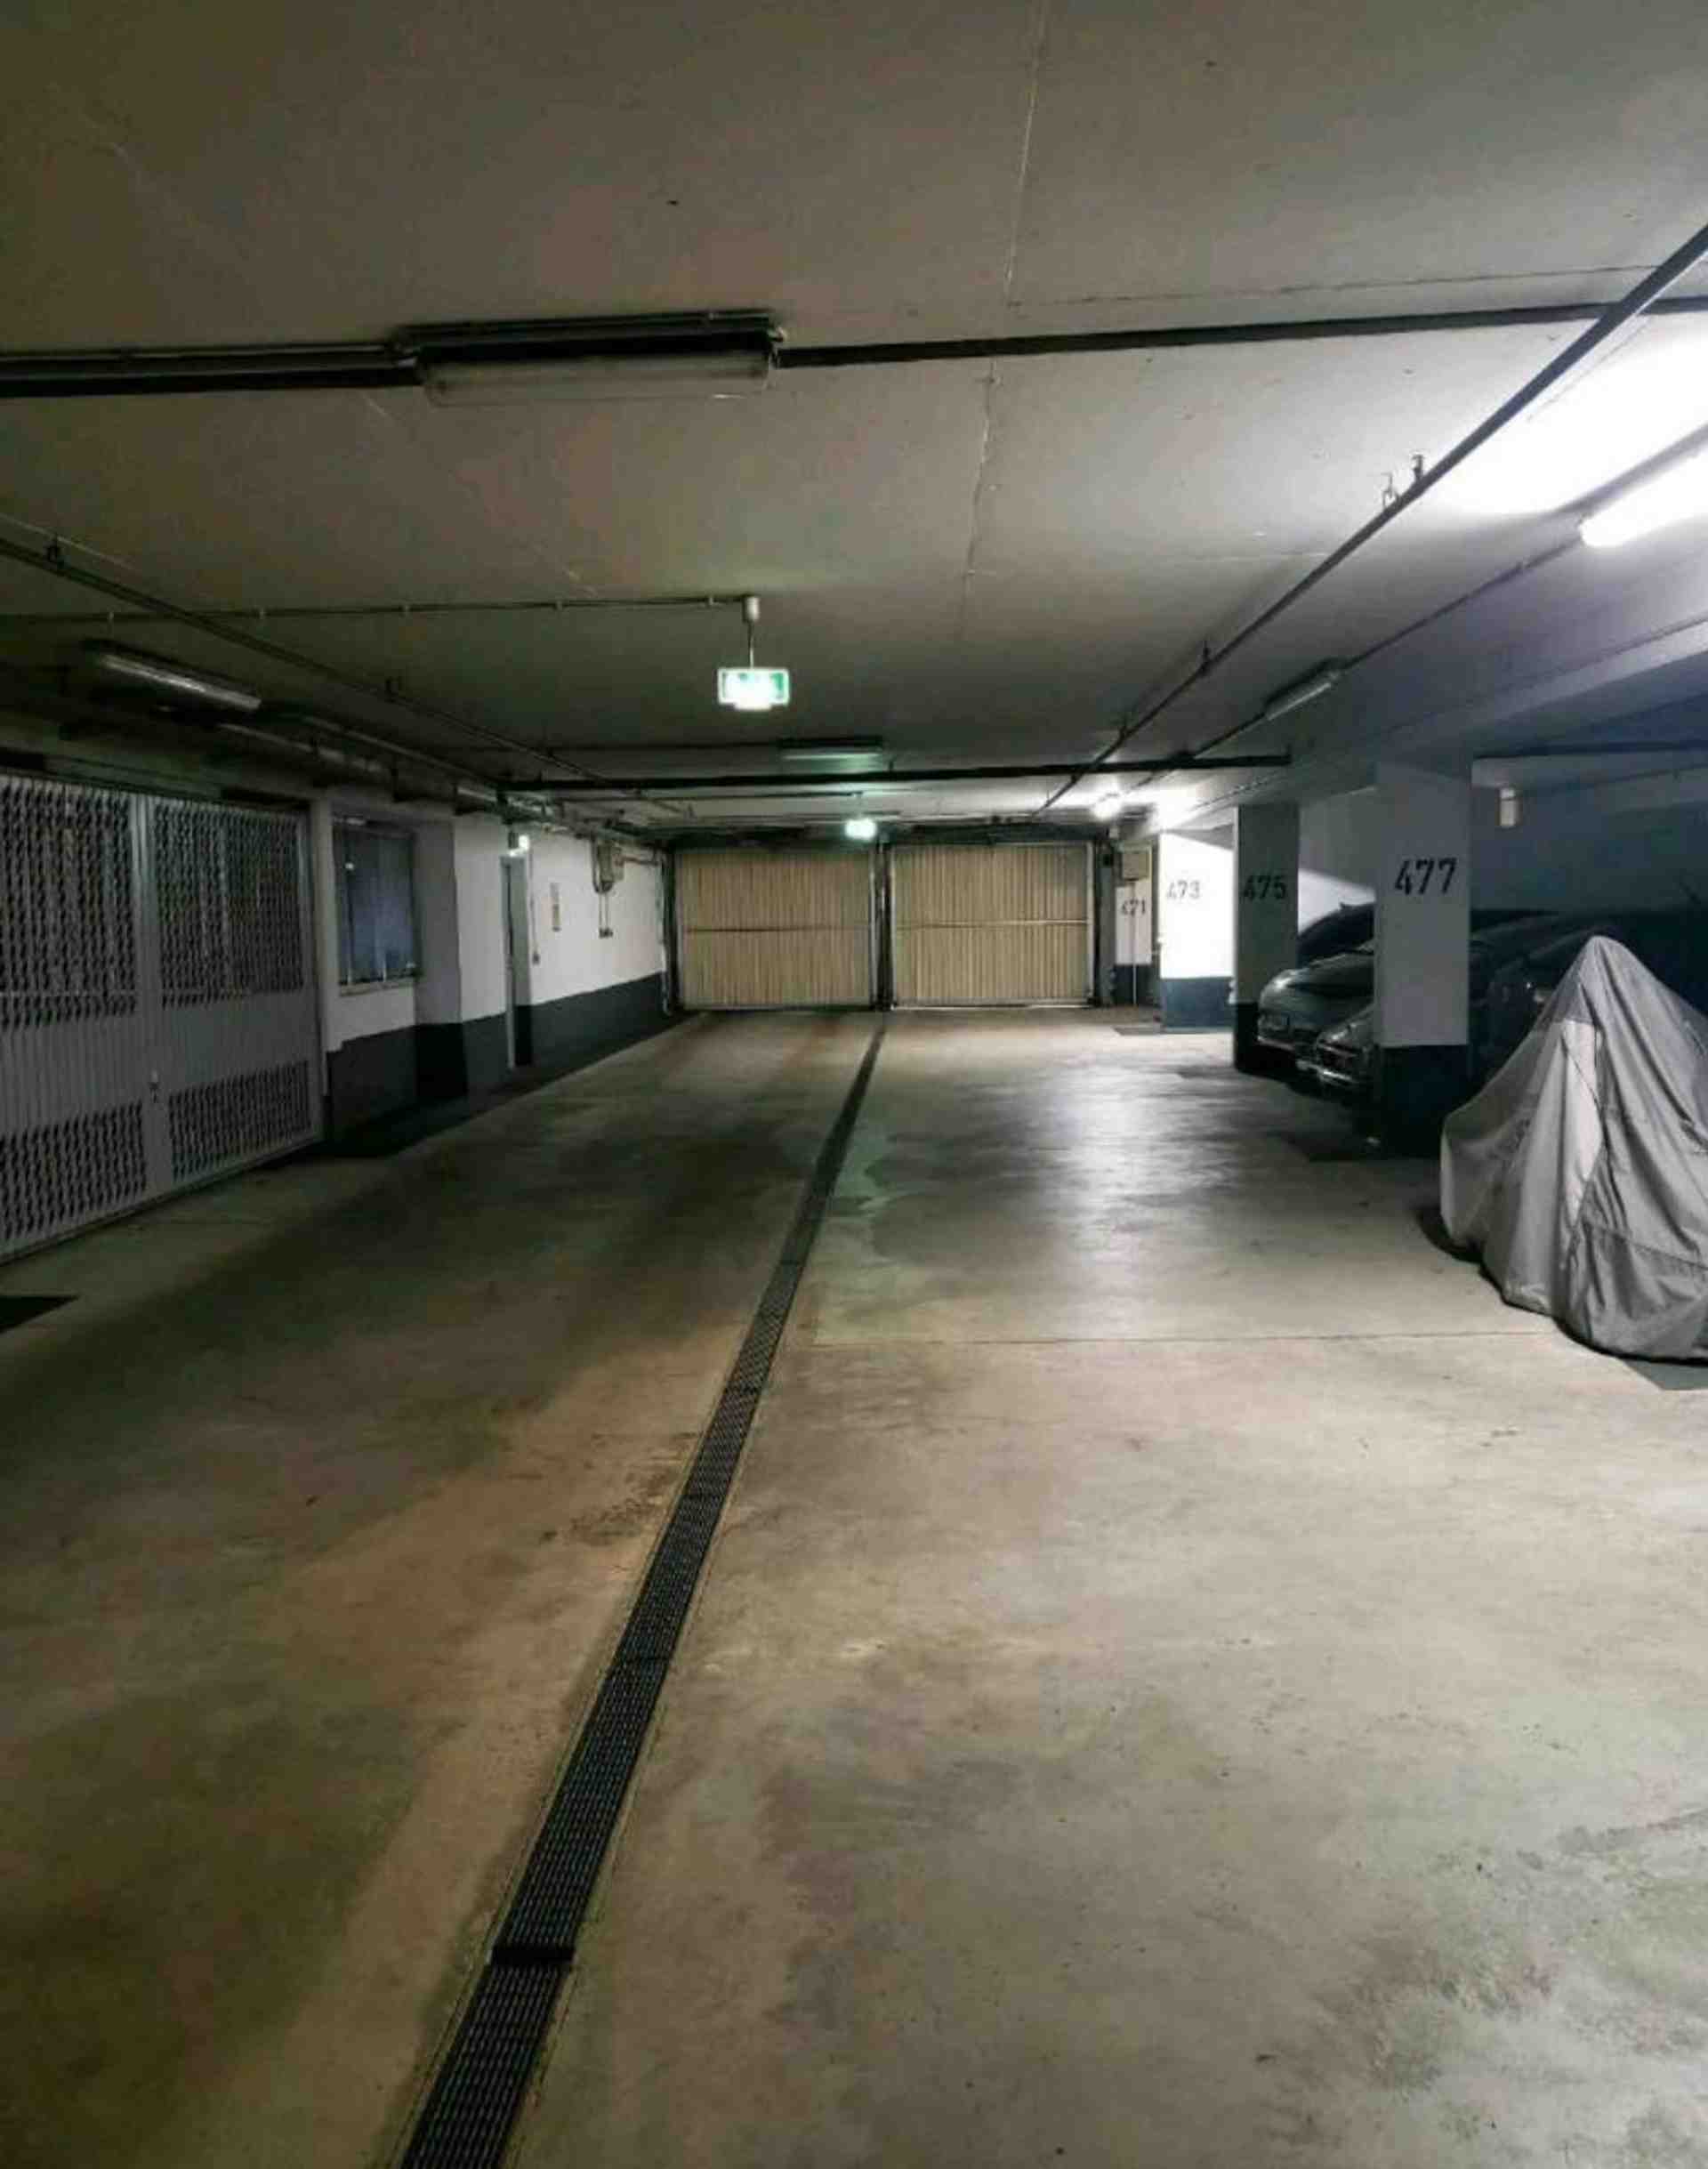 Podzemné parkovacie miesto na Daphnestraße - Daphnestraße, 81925 Mníchov - Fotka 2 z 4